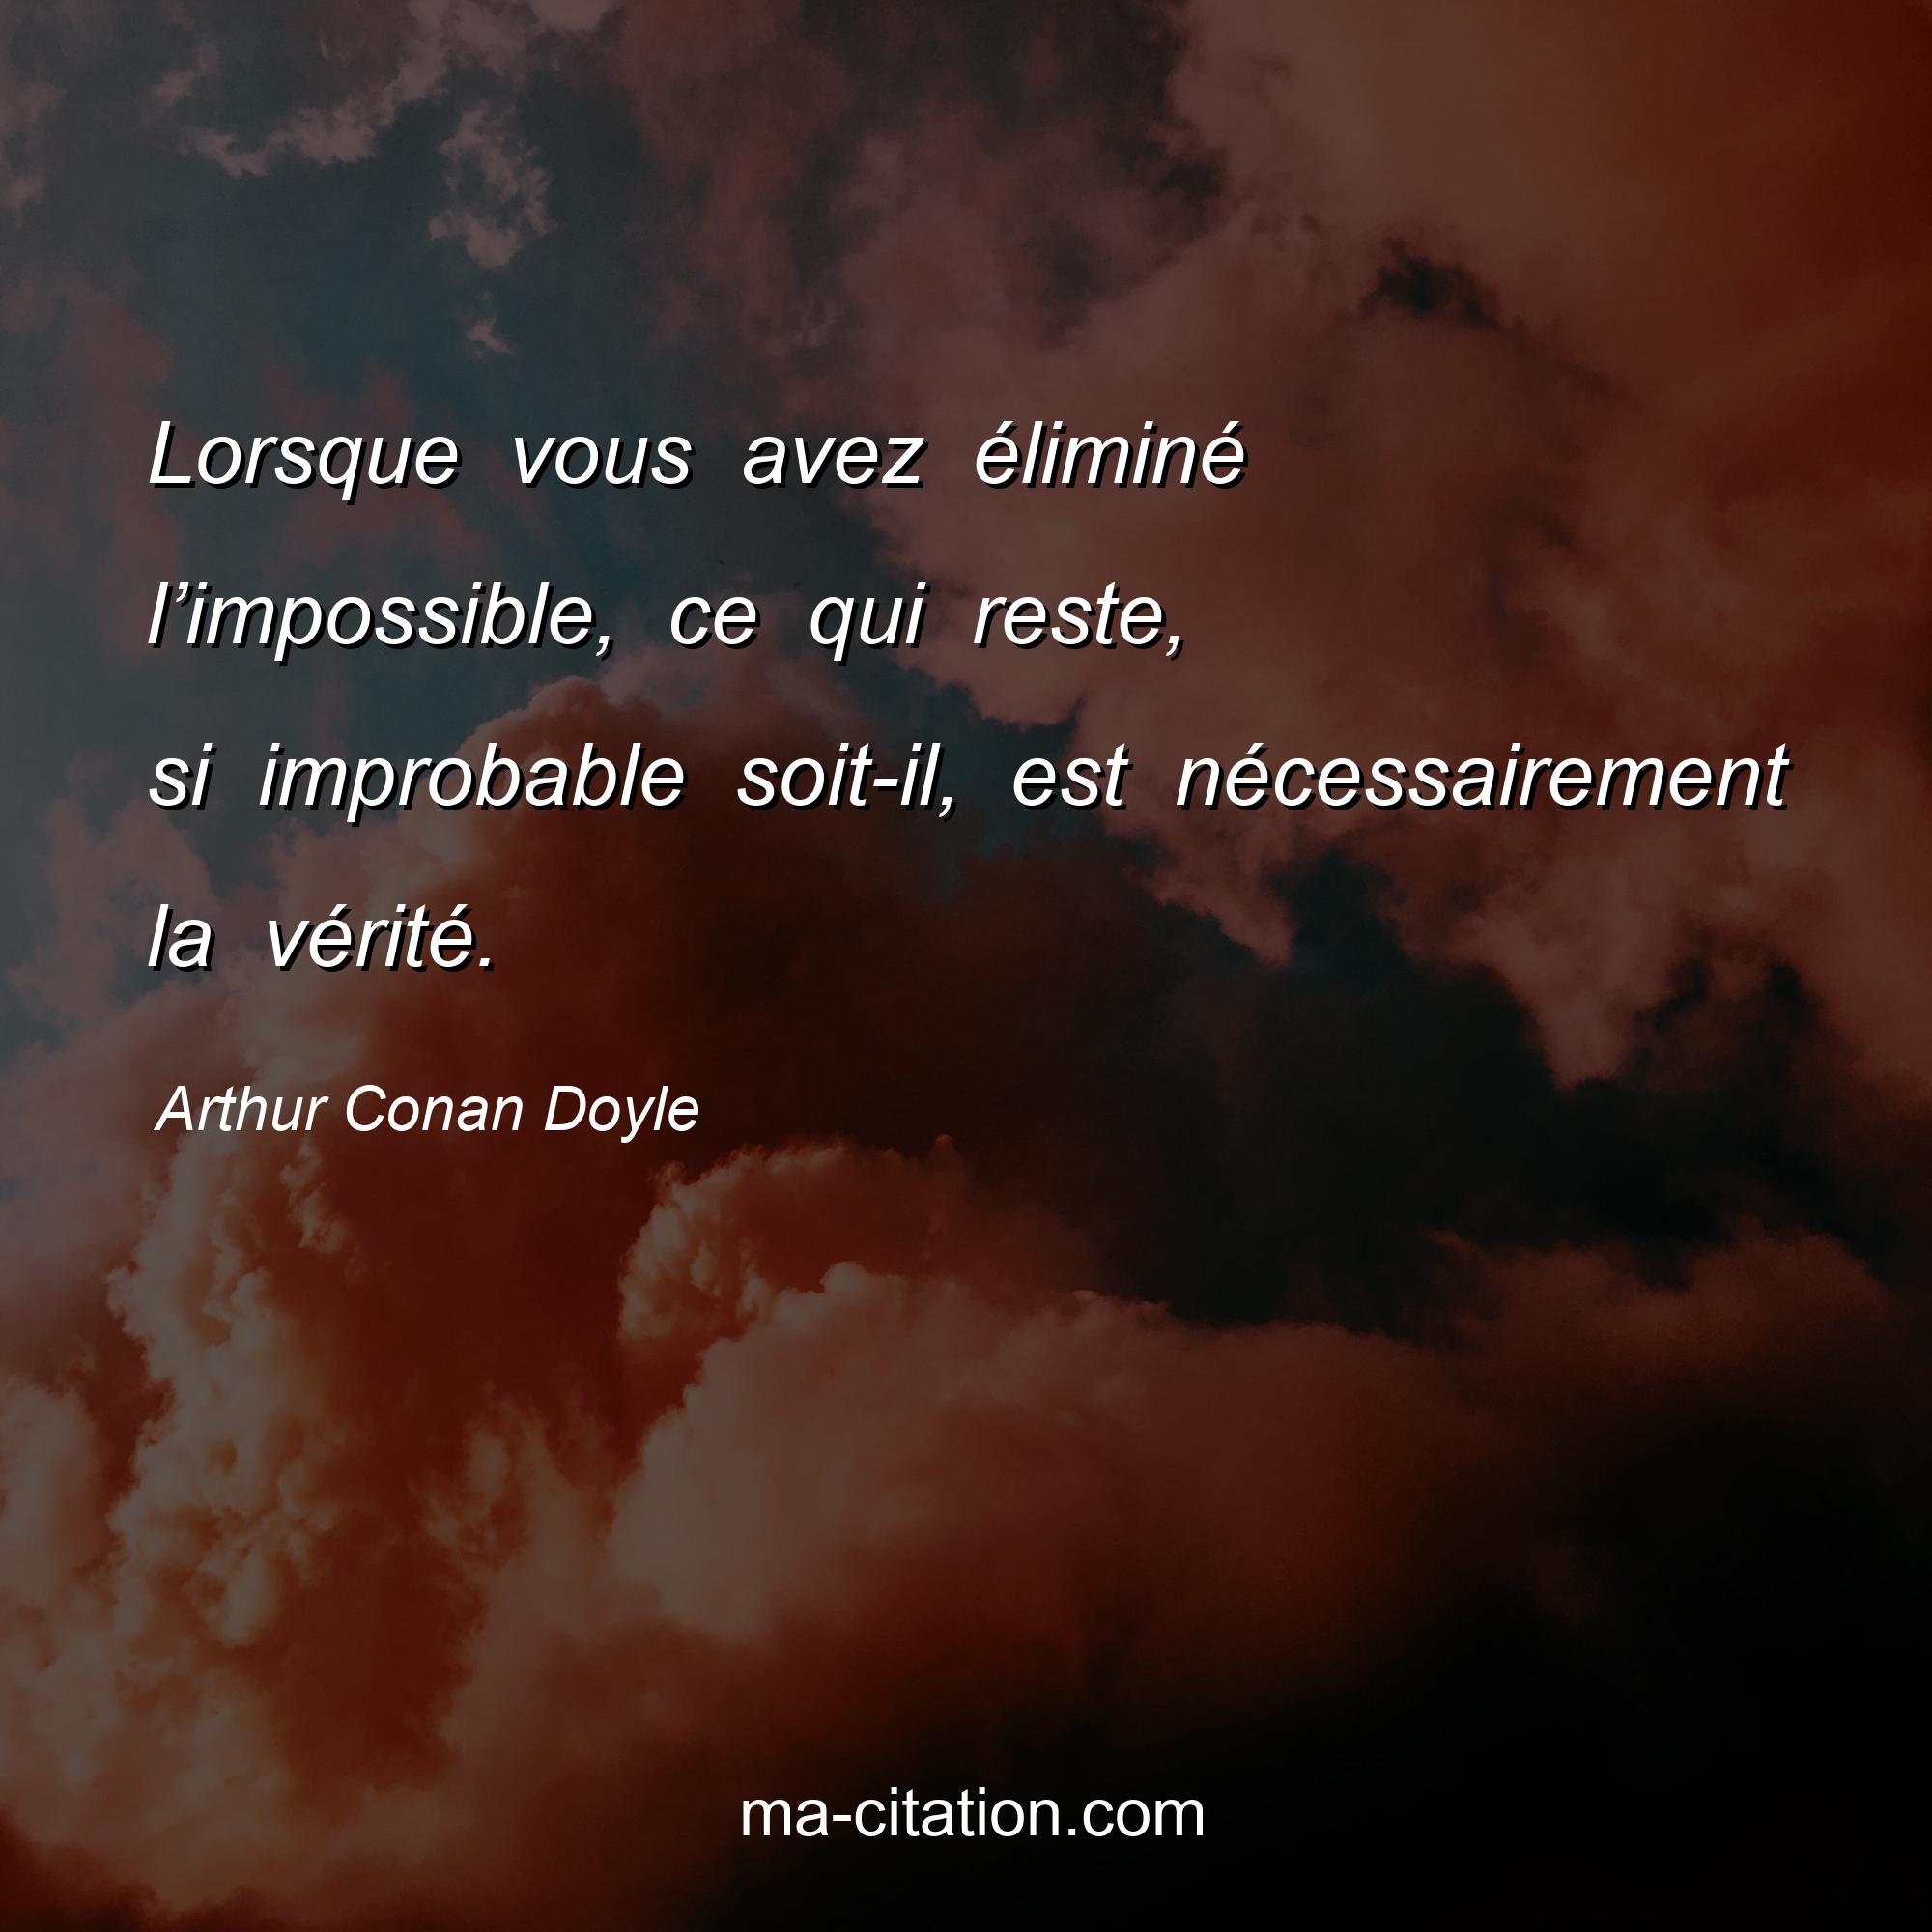 Arthur Conan Doyle : Lorsque vous avez éliminé l’impossible, ce qui reste, si improbable soit-il, est nécessairement la vérité.